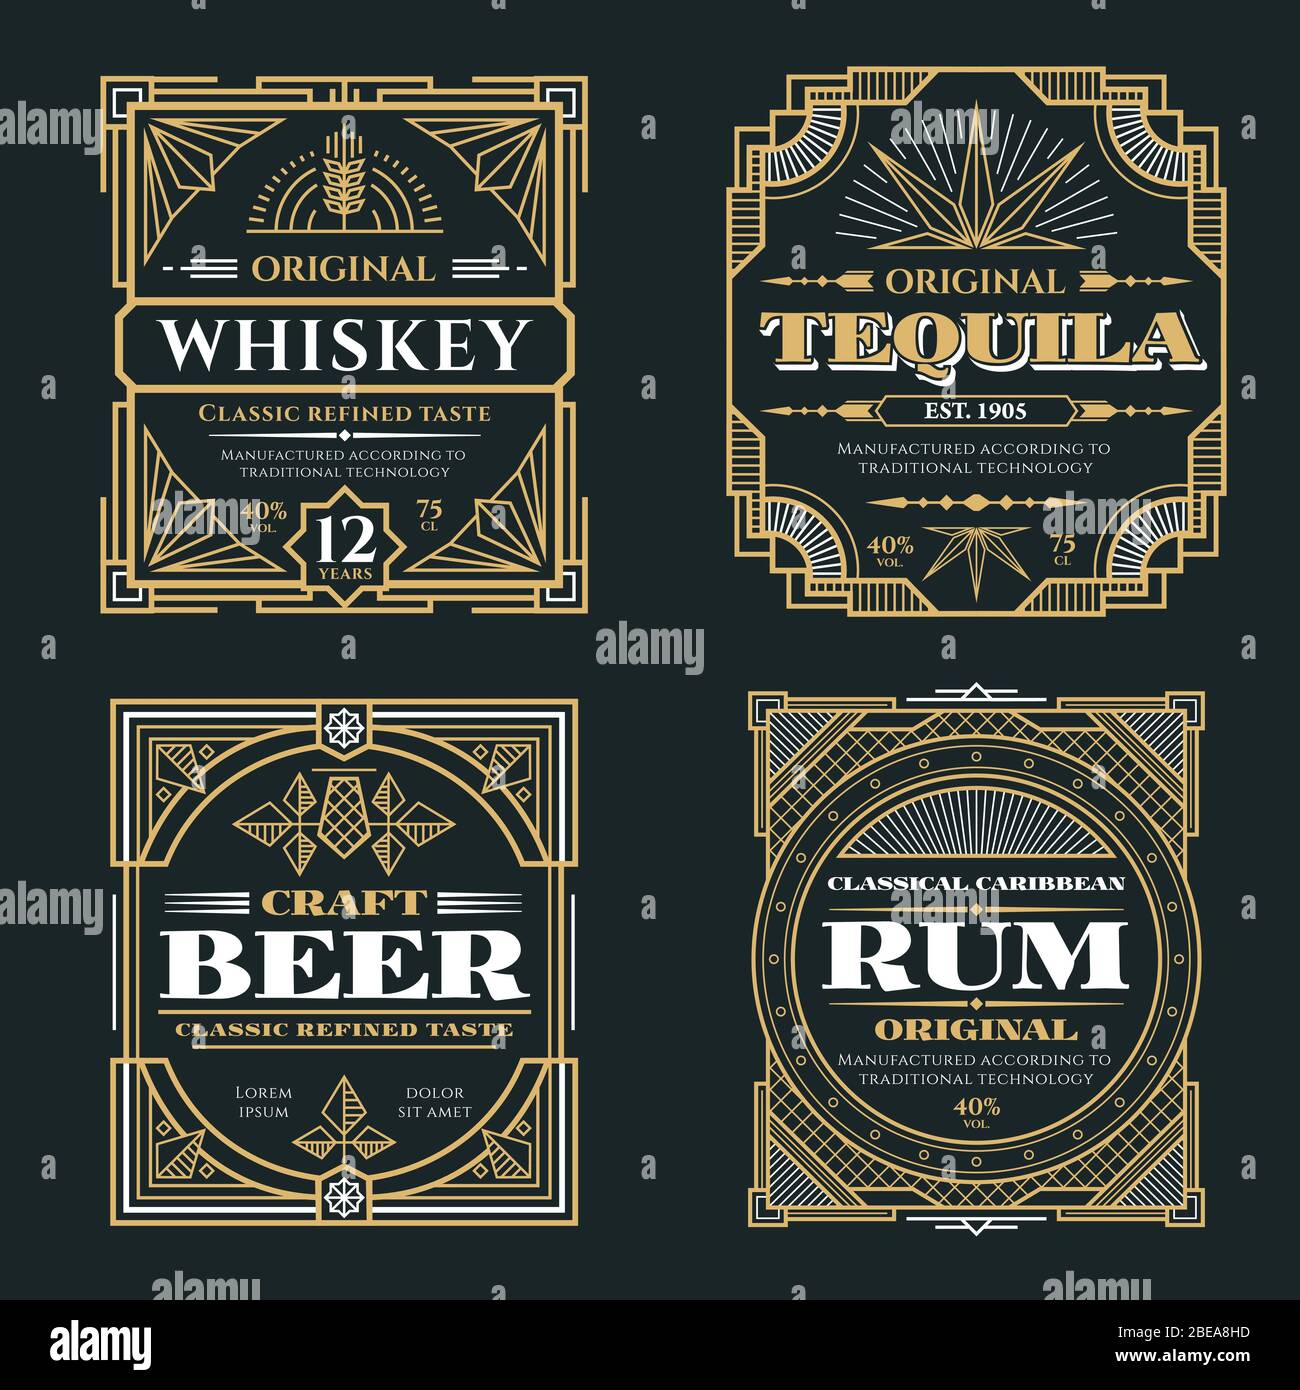 Etichette vettoriali Vintage per whisky e bevande alcoliche in stile art deco retrò. Illustrazione del poster di rum e tequila con whisky alcolico Illustrazione Vettoriale